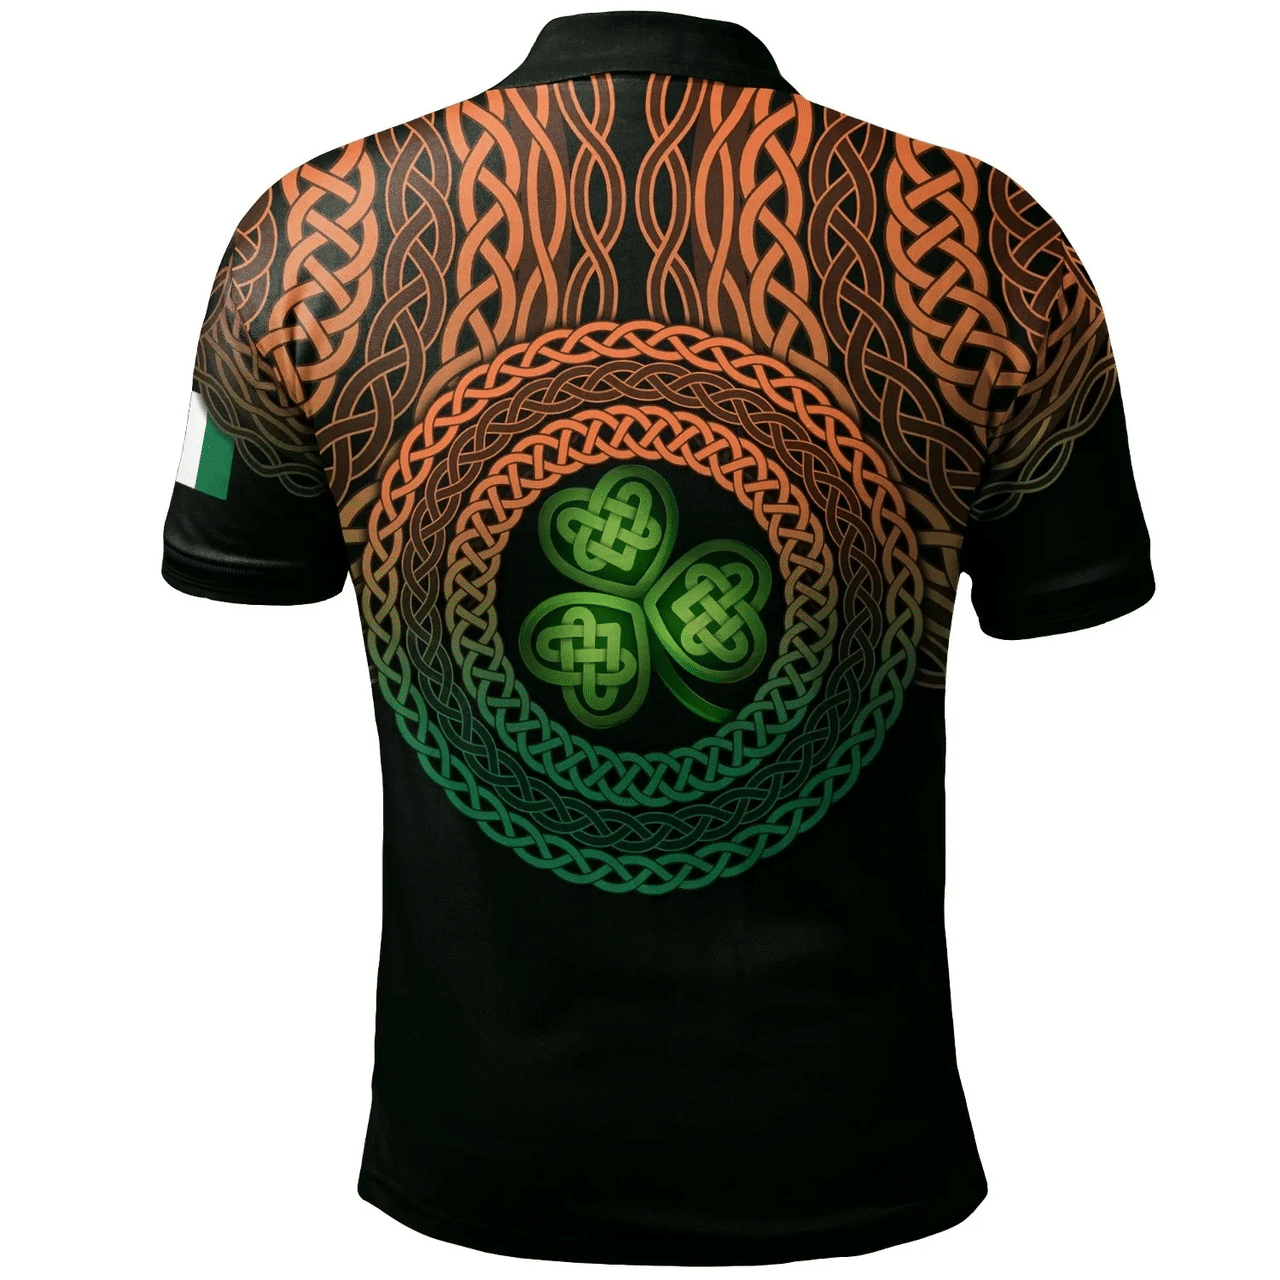 1stIreland Ireland Polo Shirt - Haugh or O'Hough Irish Family Crest Polo Shirt - Celtic Pride A7 | 1stIreland.com